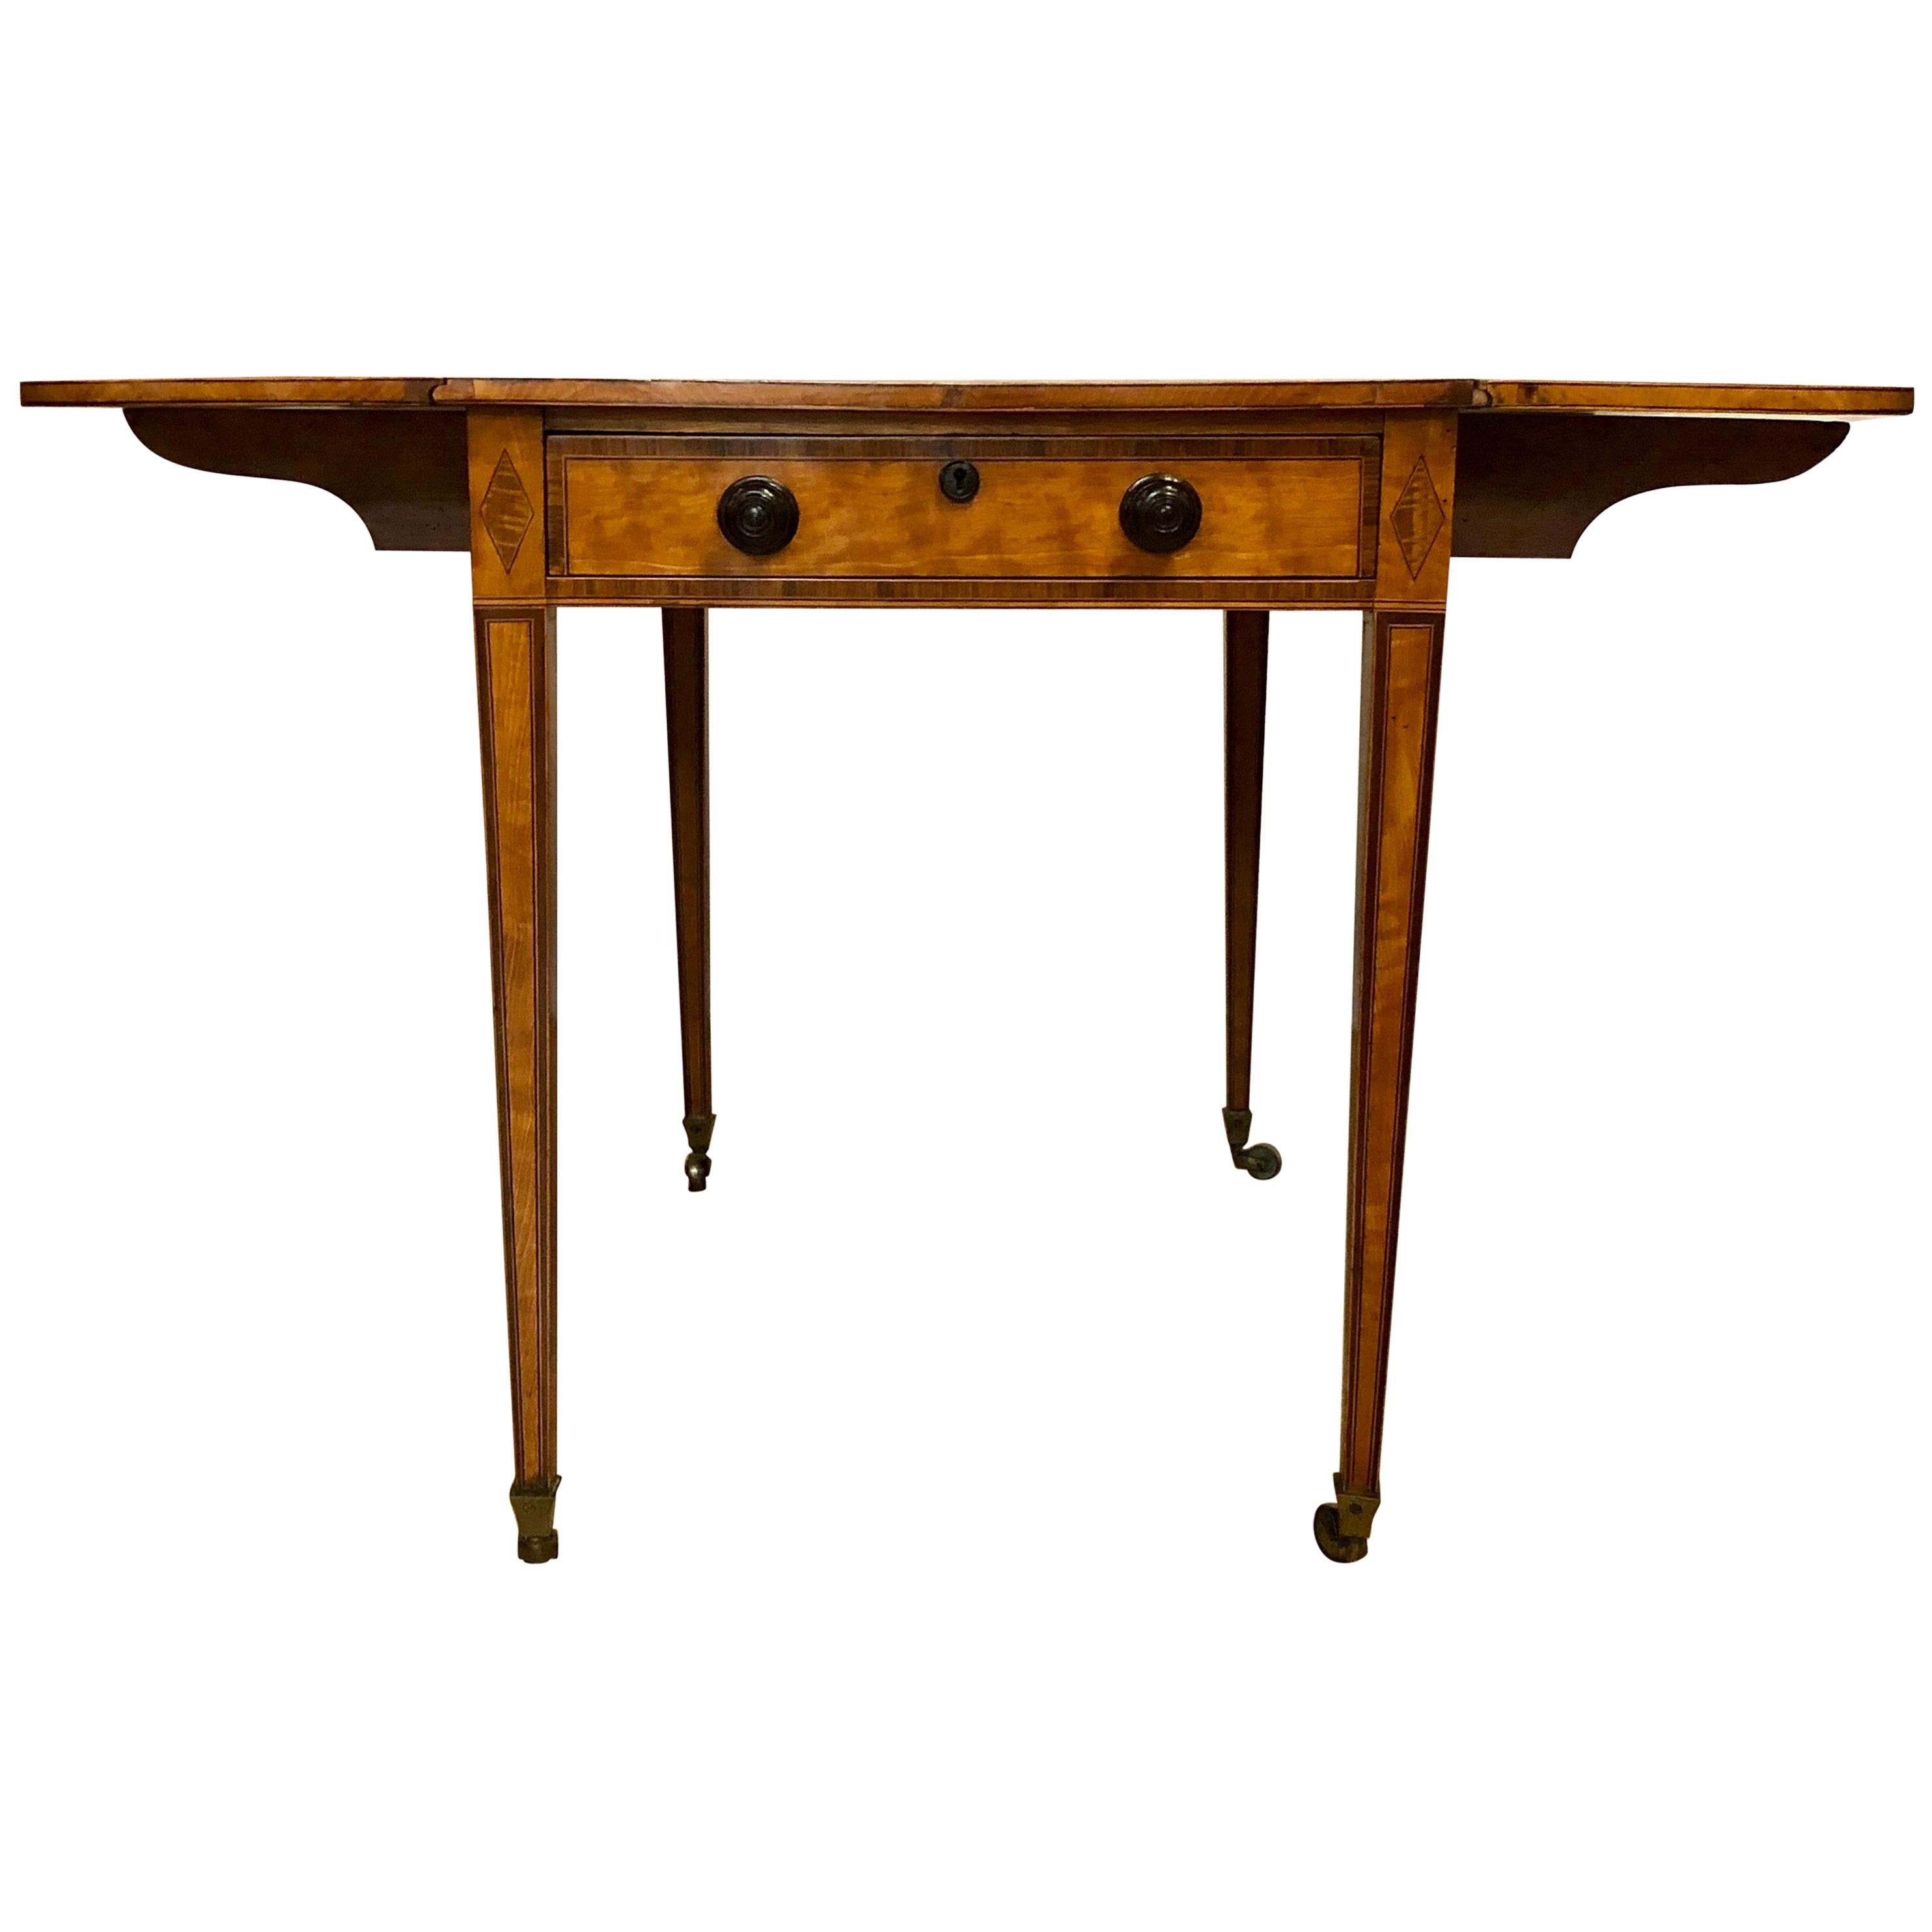 Ancienne table à abattants anglaise en bois de satin, vers 1810-1820